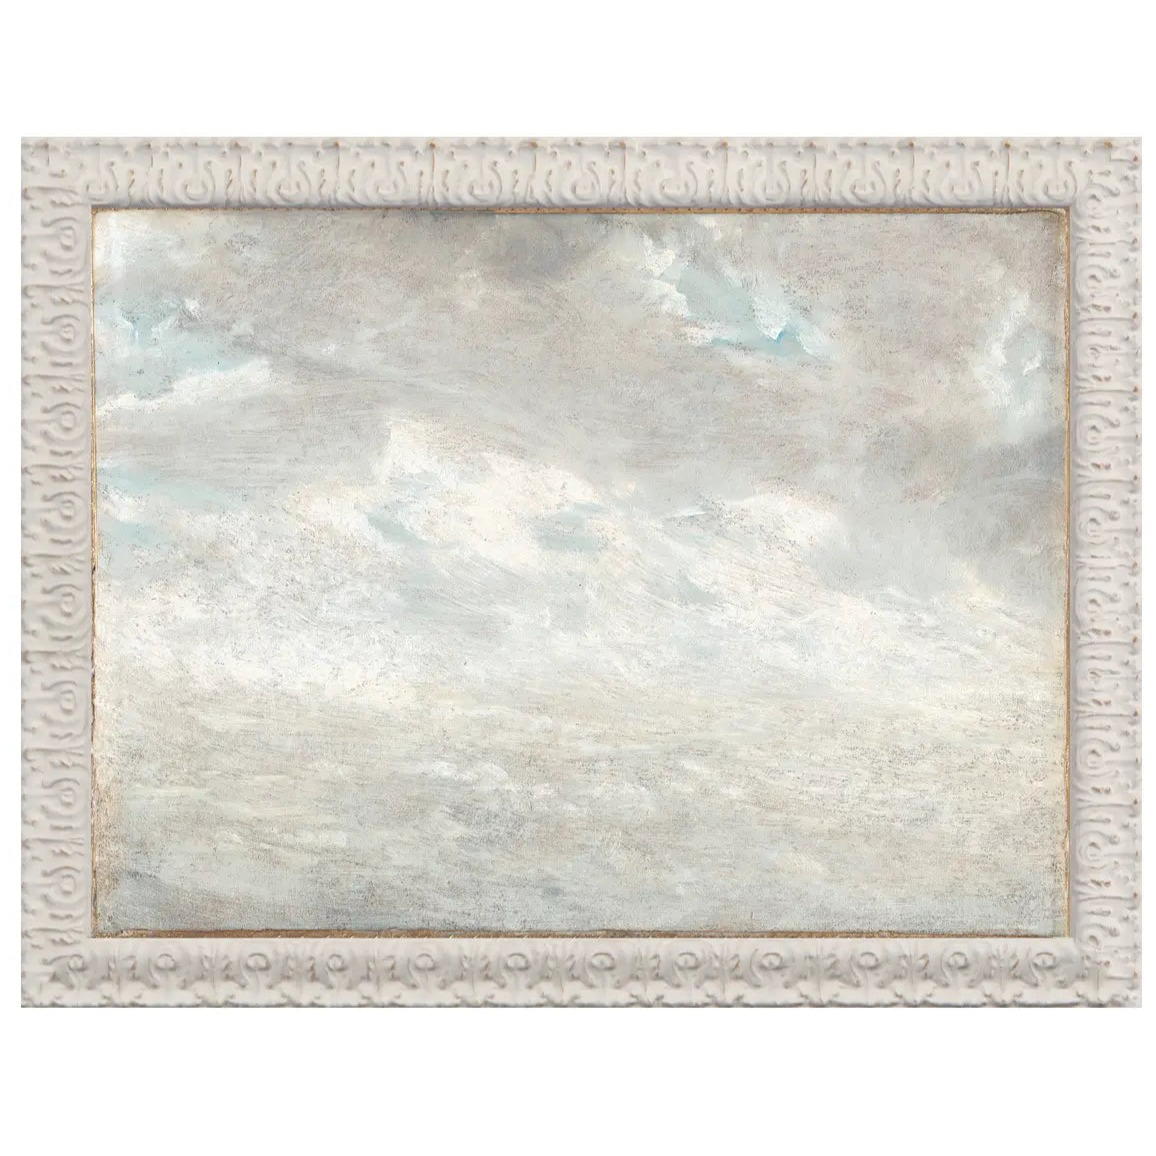 Home Smith Petite Scapes Constable Cloud Study c.1821 Celadon Art